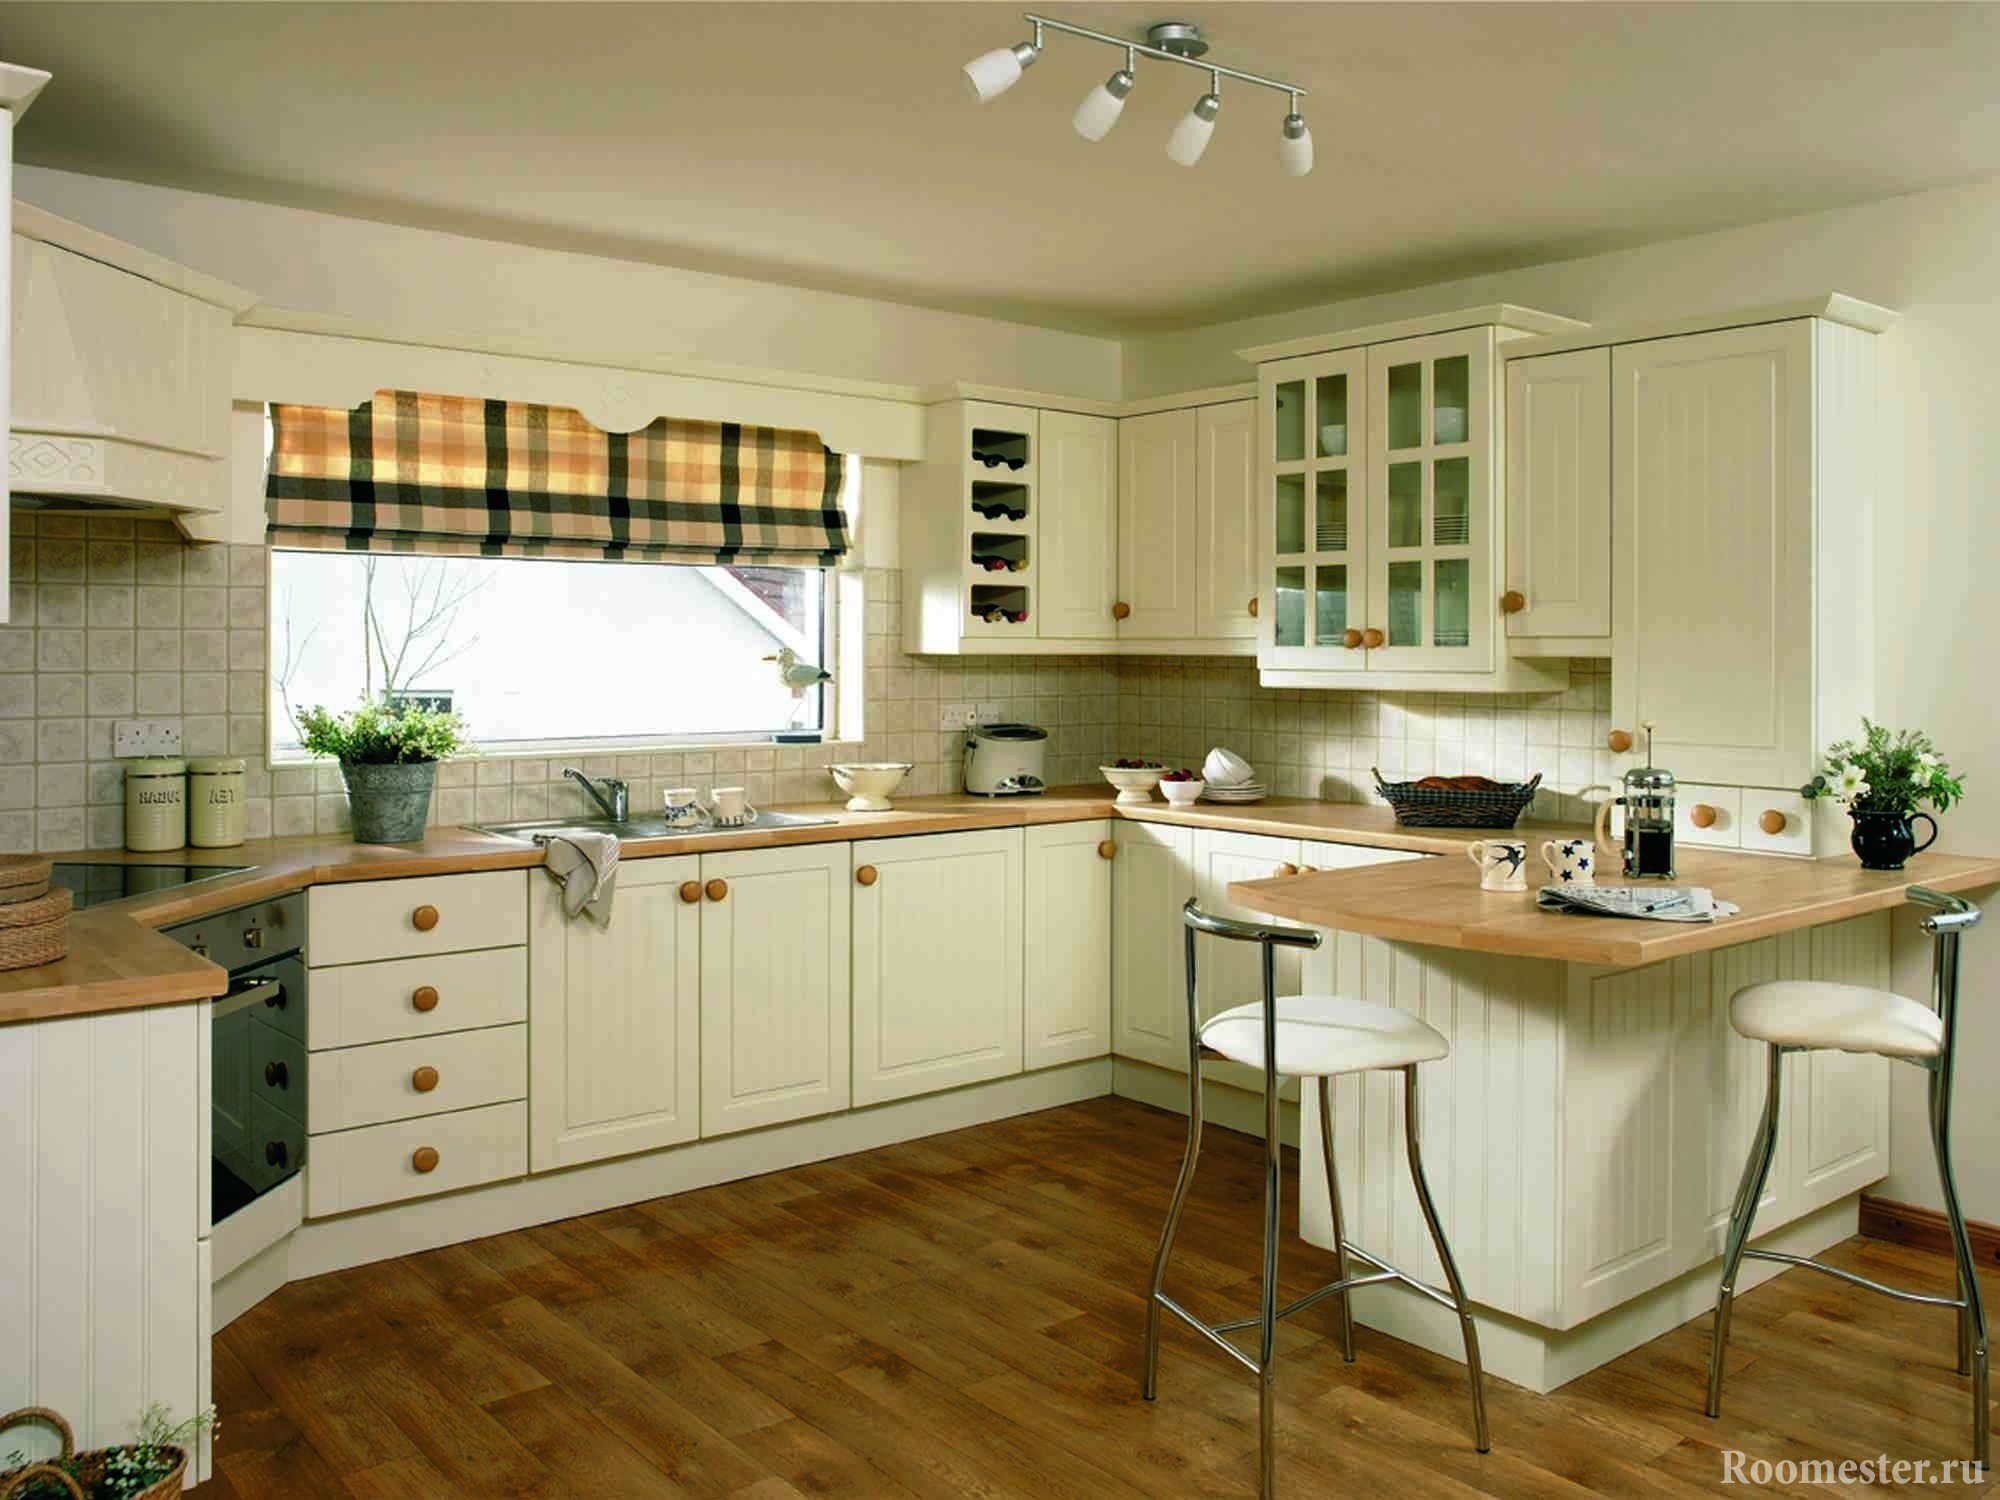 Дизайн кухни с окном — советы по оформлению интерьера 60 фото | vizada